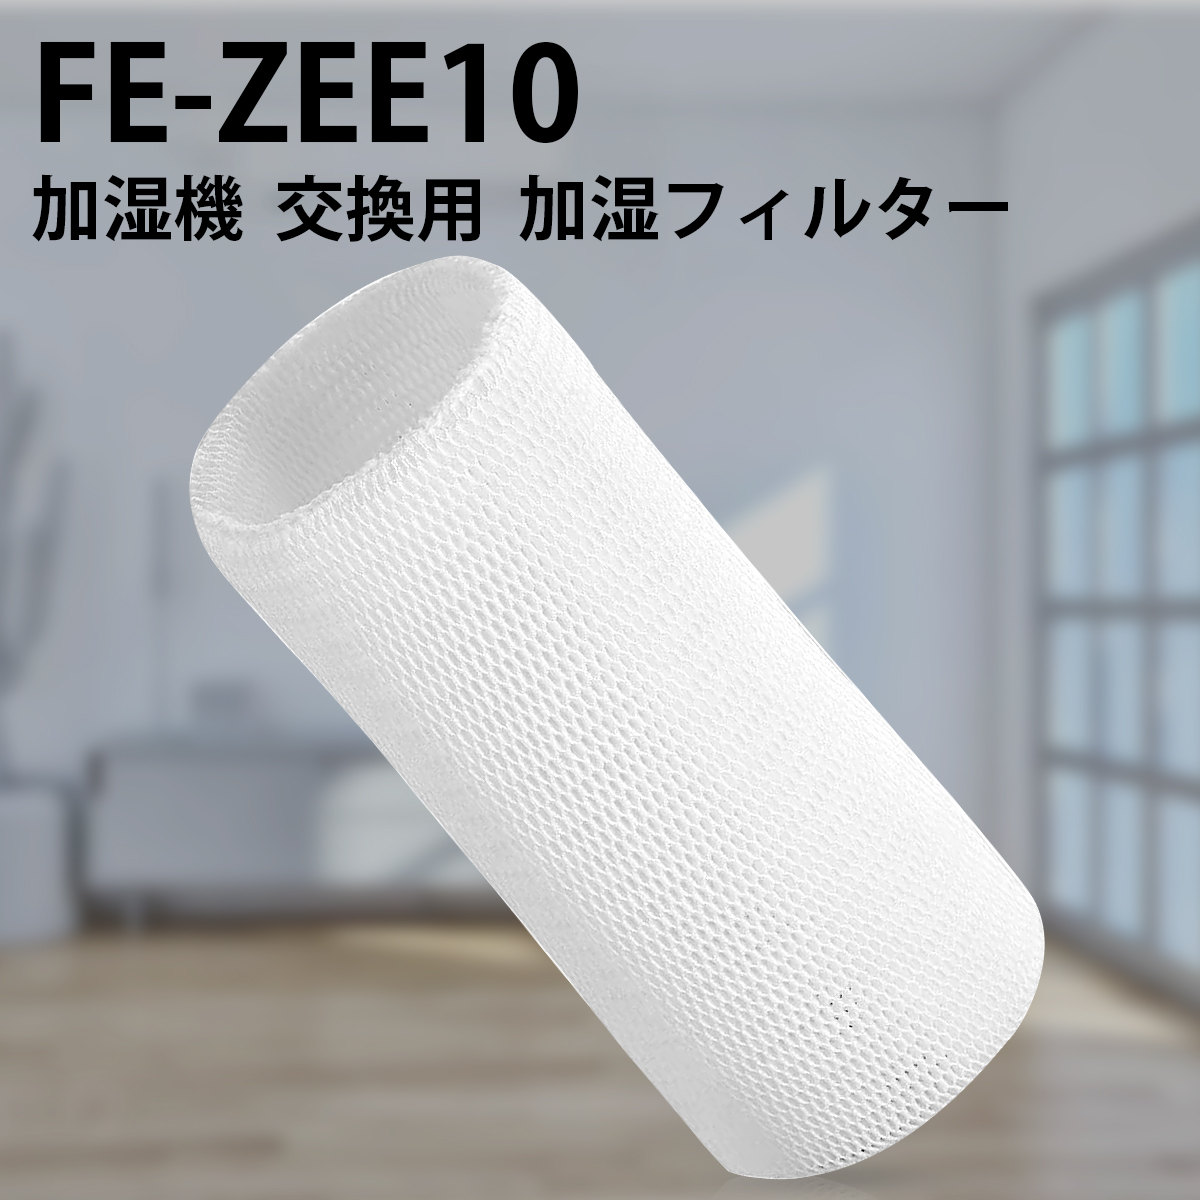 【楽天市場】パナソニック 加湿フィルター FE-ZEE10 加湿器 フィルター fe-zee10 気化式加湿機 FE-KFE10-W FE